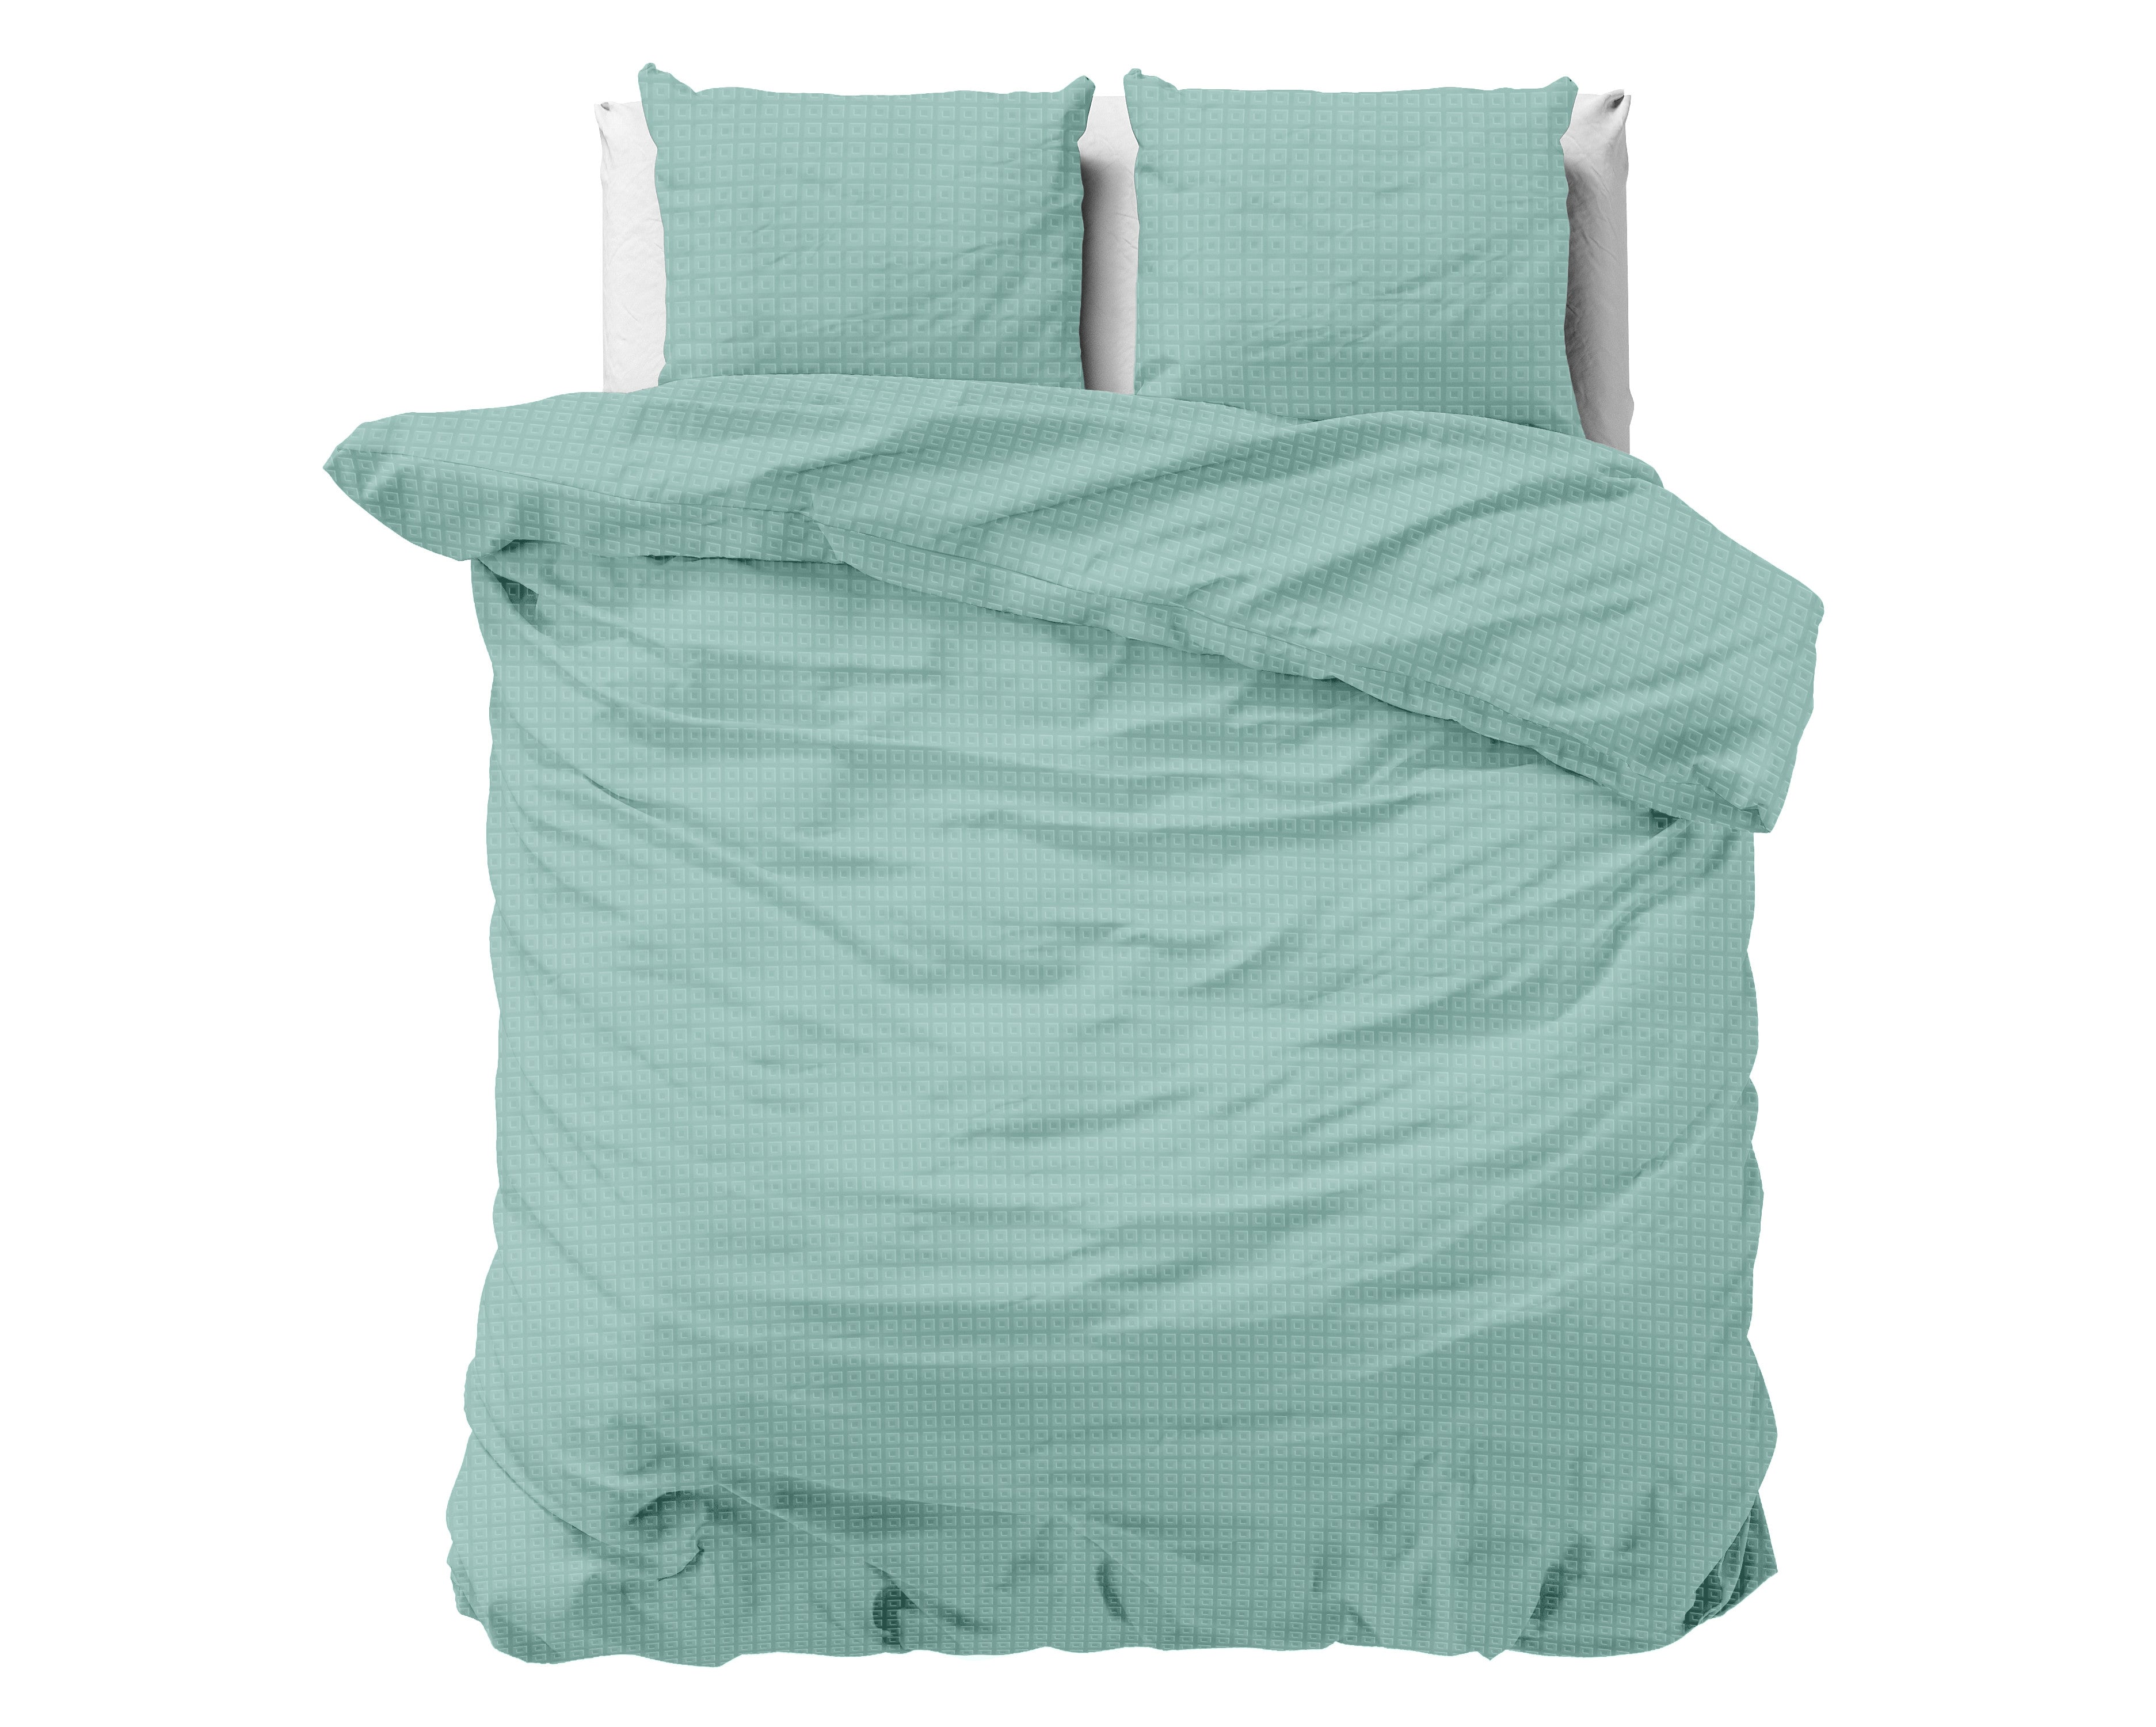 Billede af Axel sengesæt, Mint grøn 240 x 220 cm